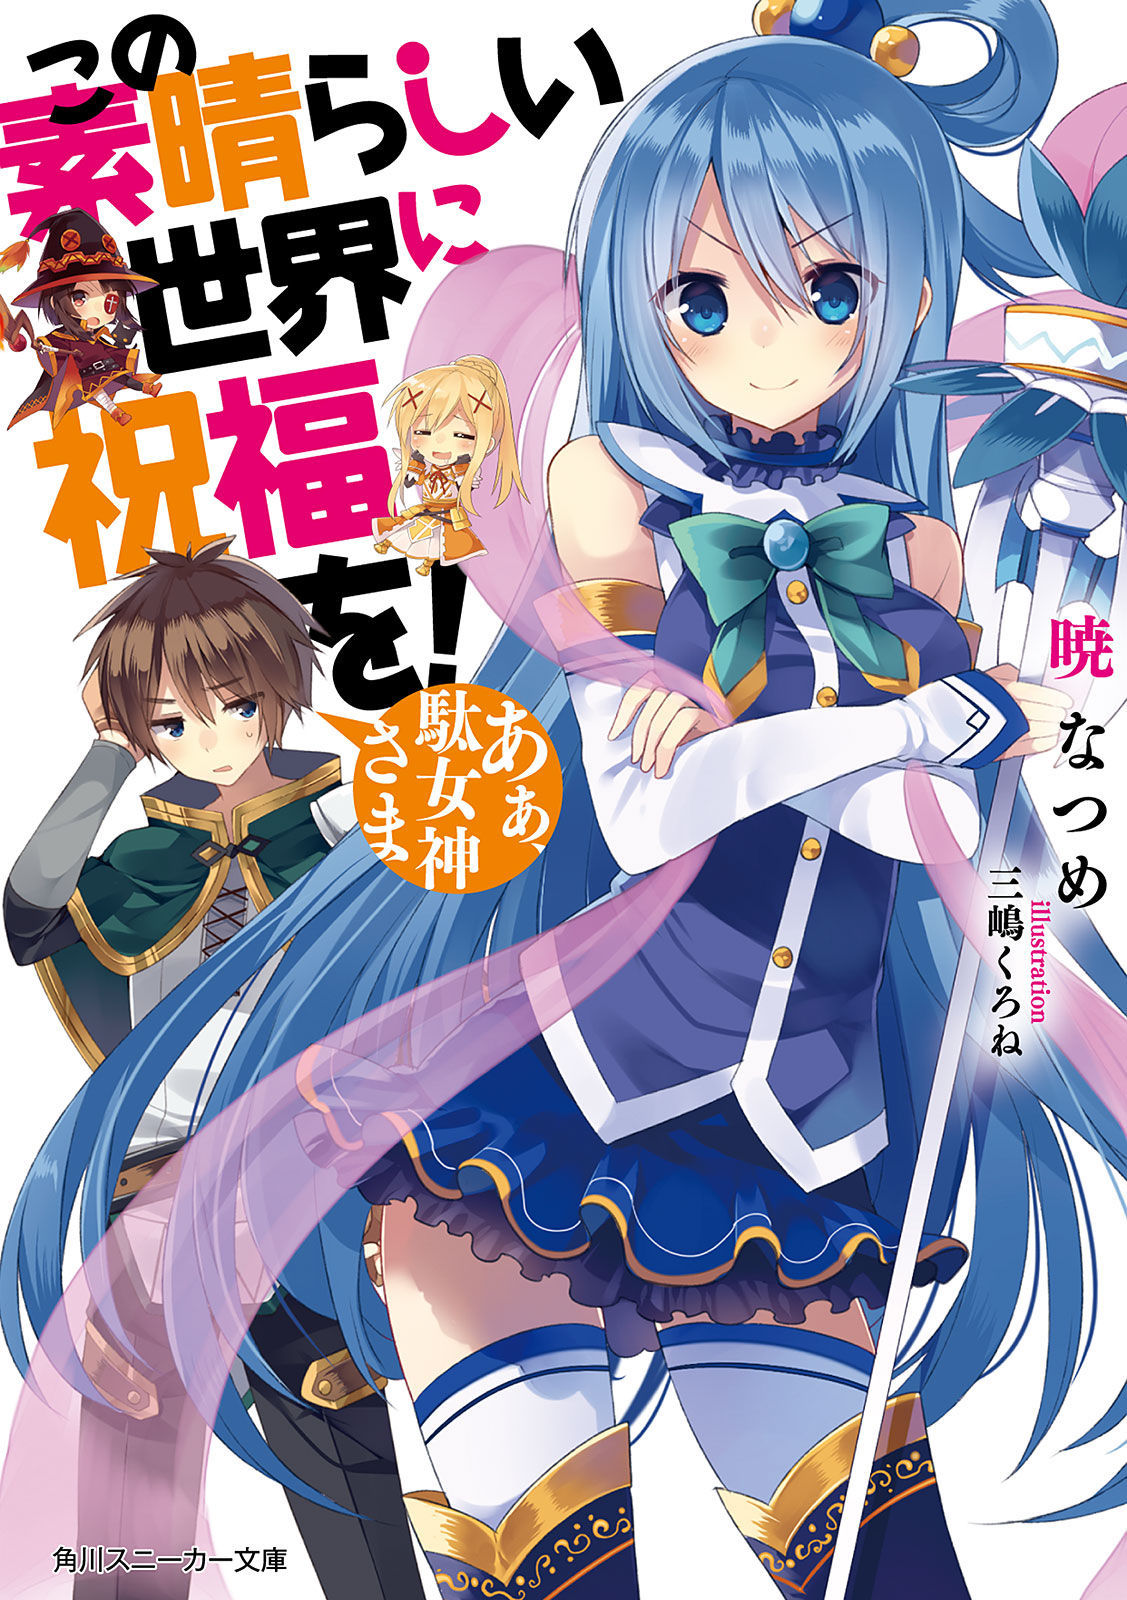 Konosuba Light Novel Volume 1, Kono Subarashii Sekai ni Shukufuku wo! Wiki